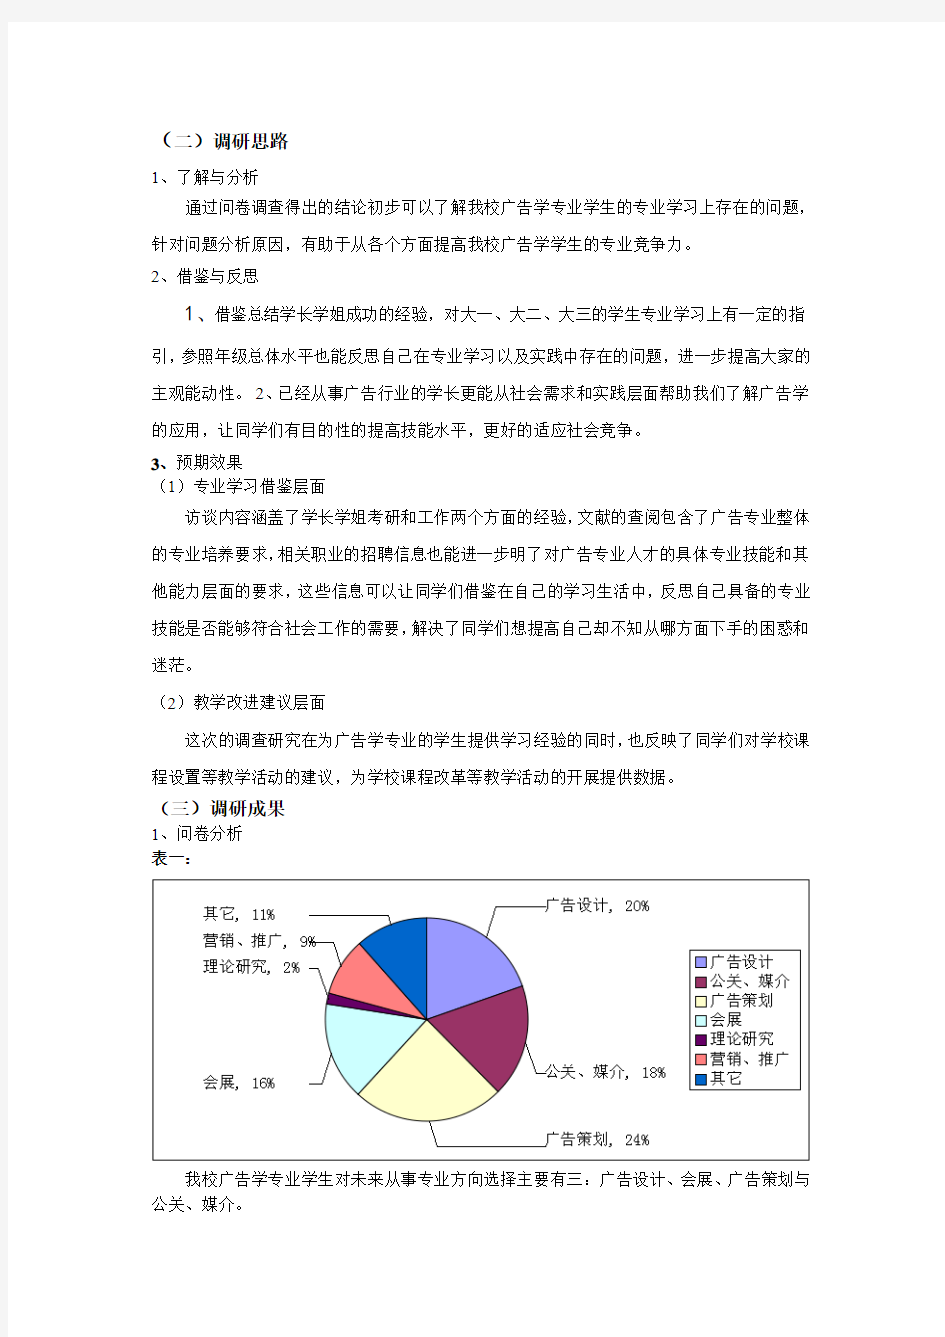 天津外国语大学广告学专业教学现状调查报告展示剖析